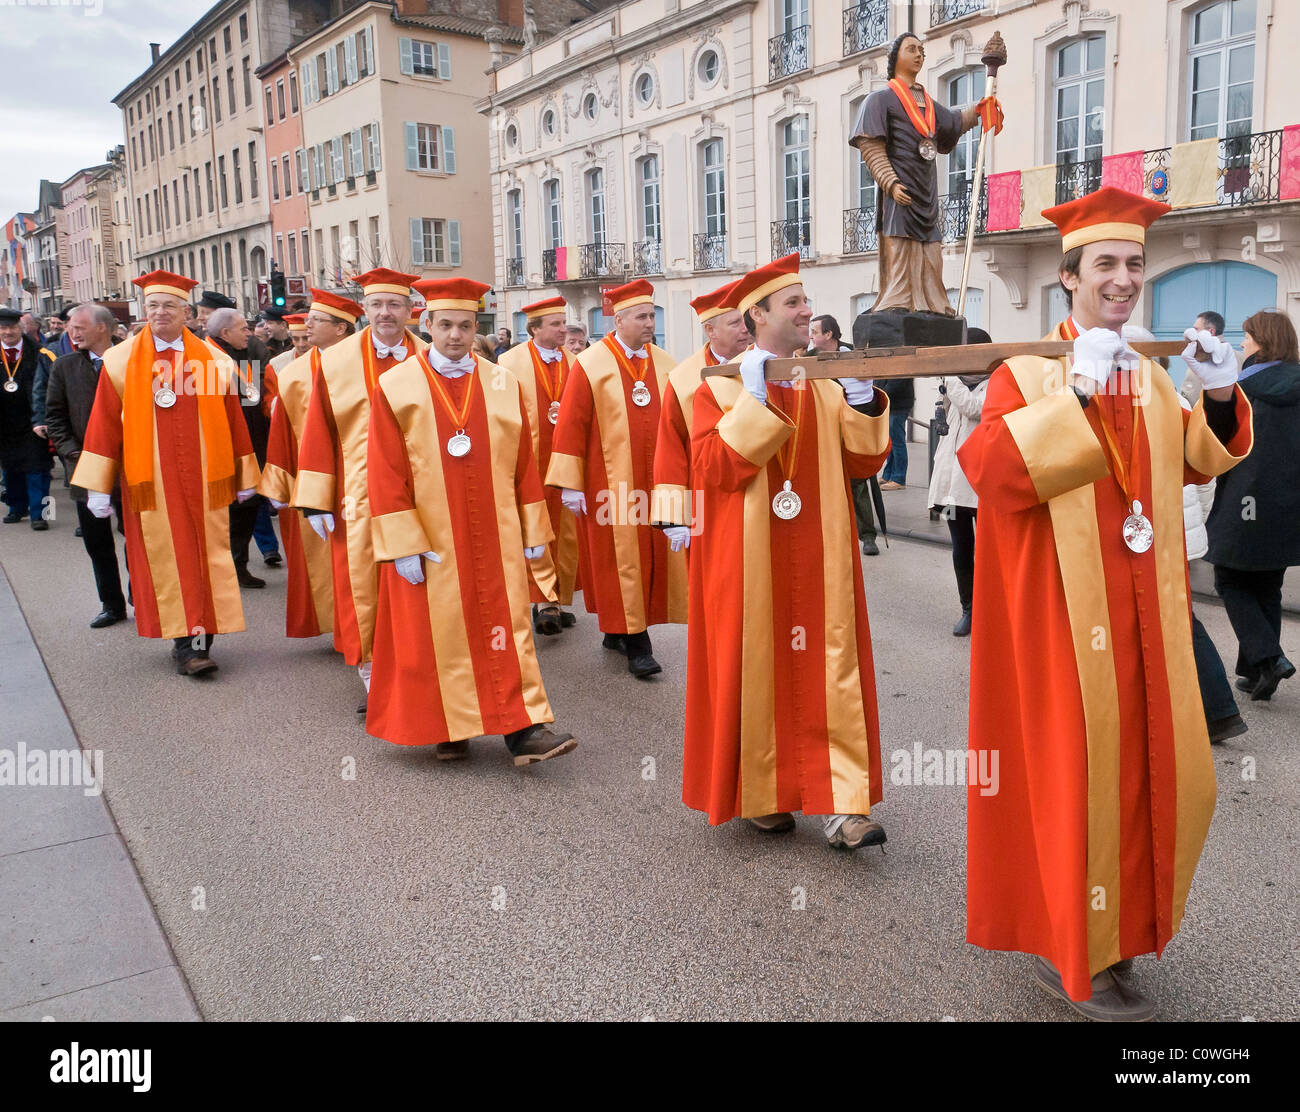 Processione in indumenti tradizionali della vigna confraternite durante la tradizionale festa della 'Saint-Vincent tournante', Macon 2009. Foto Stock